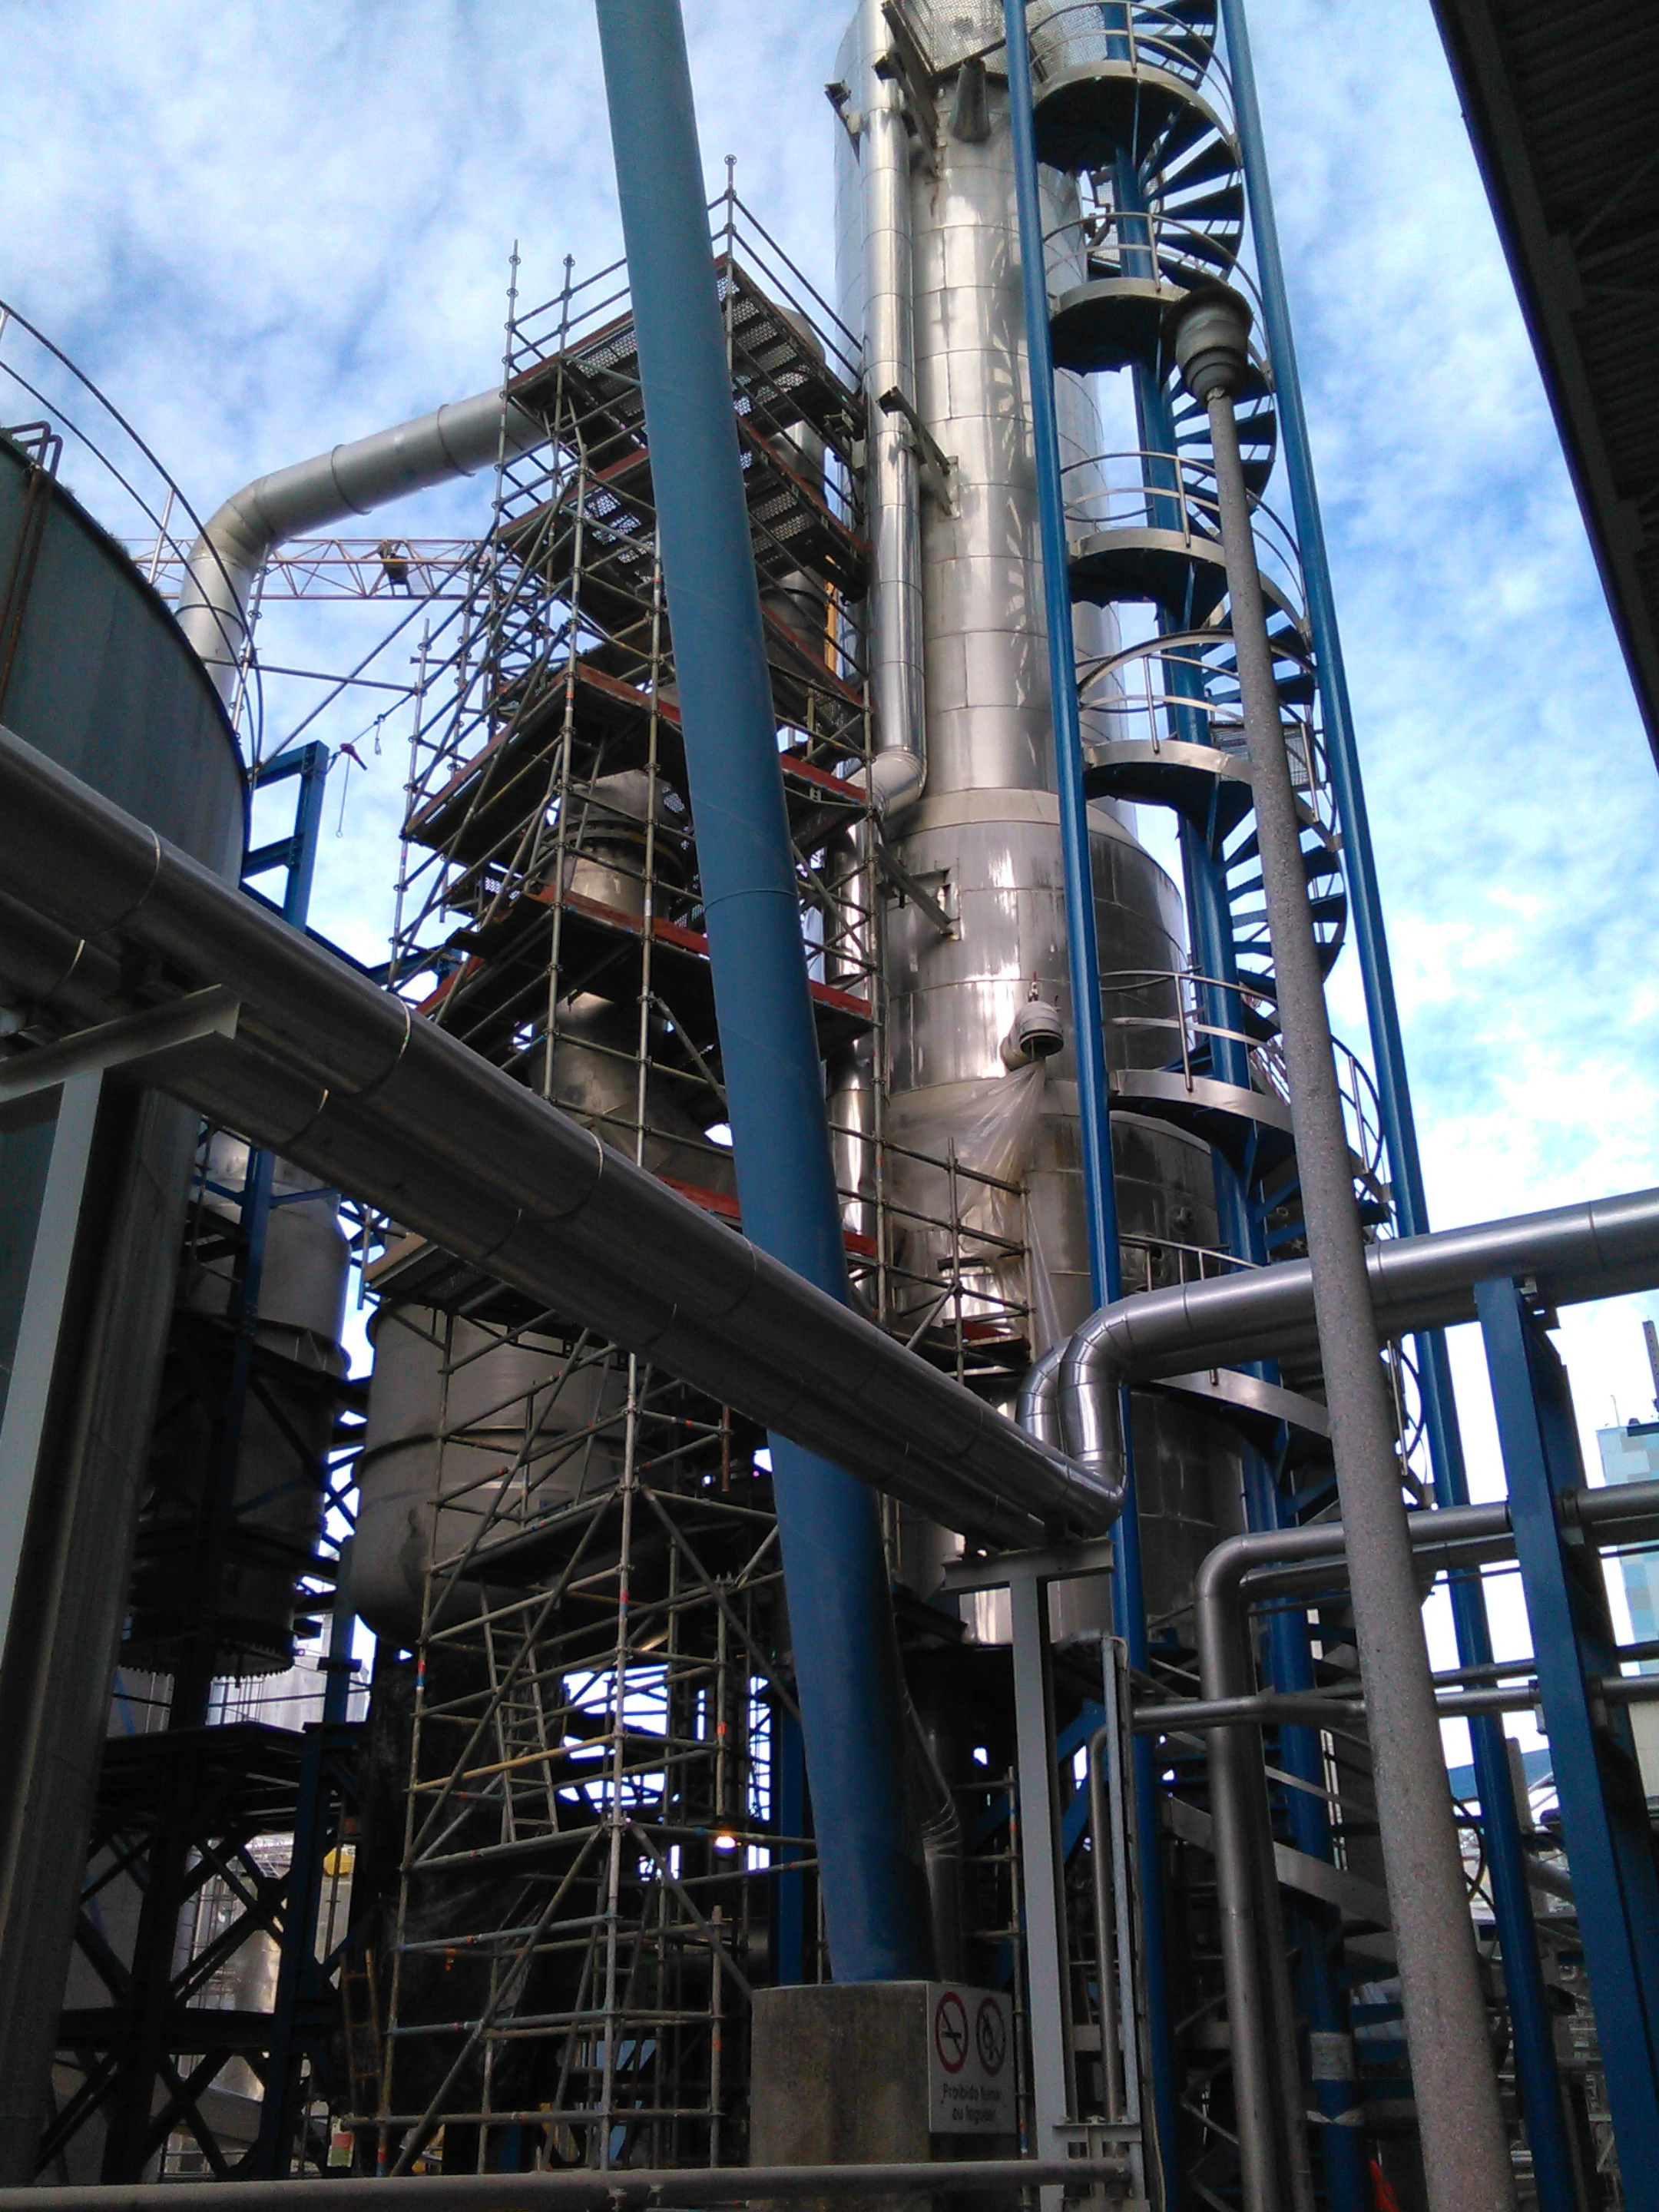 BTL Heat exchanger (evaporator) in stainless steel - Chemical Industry 